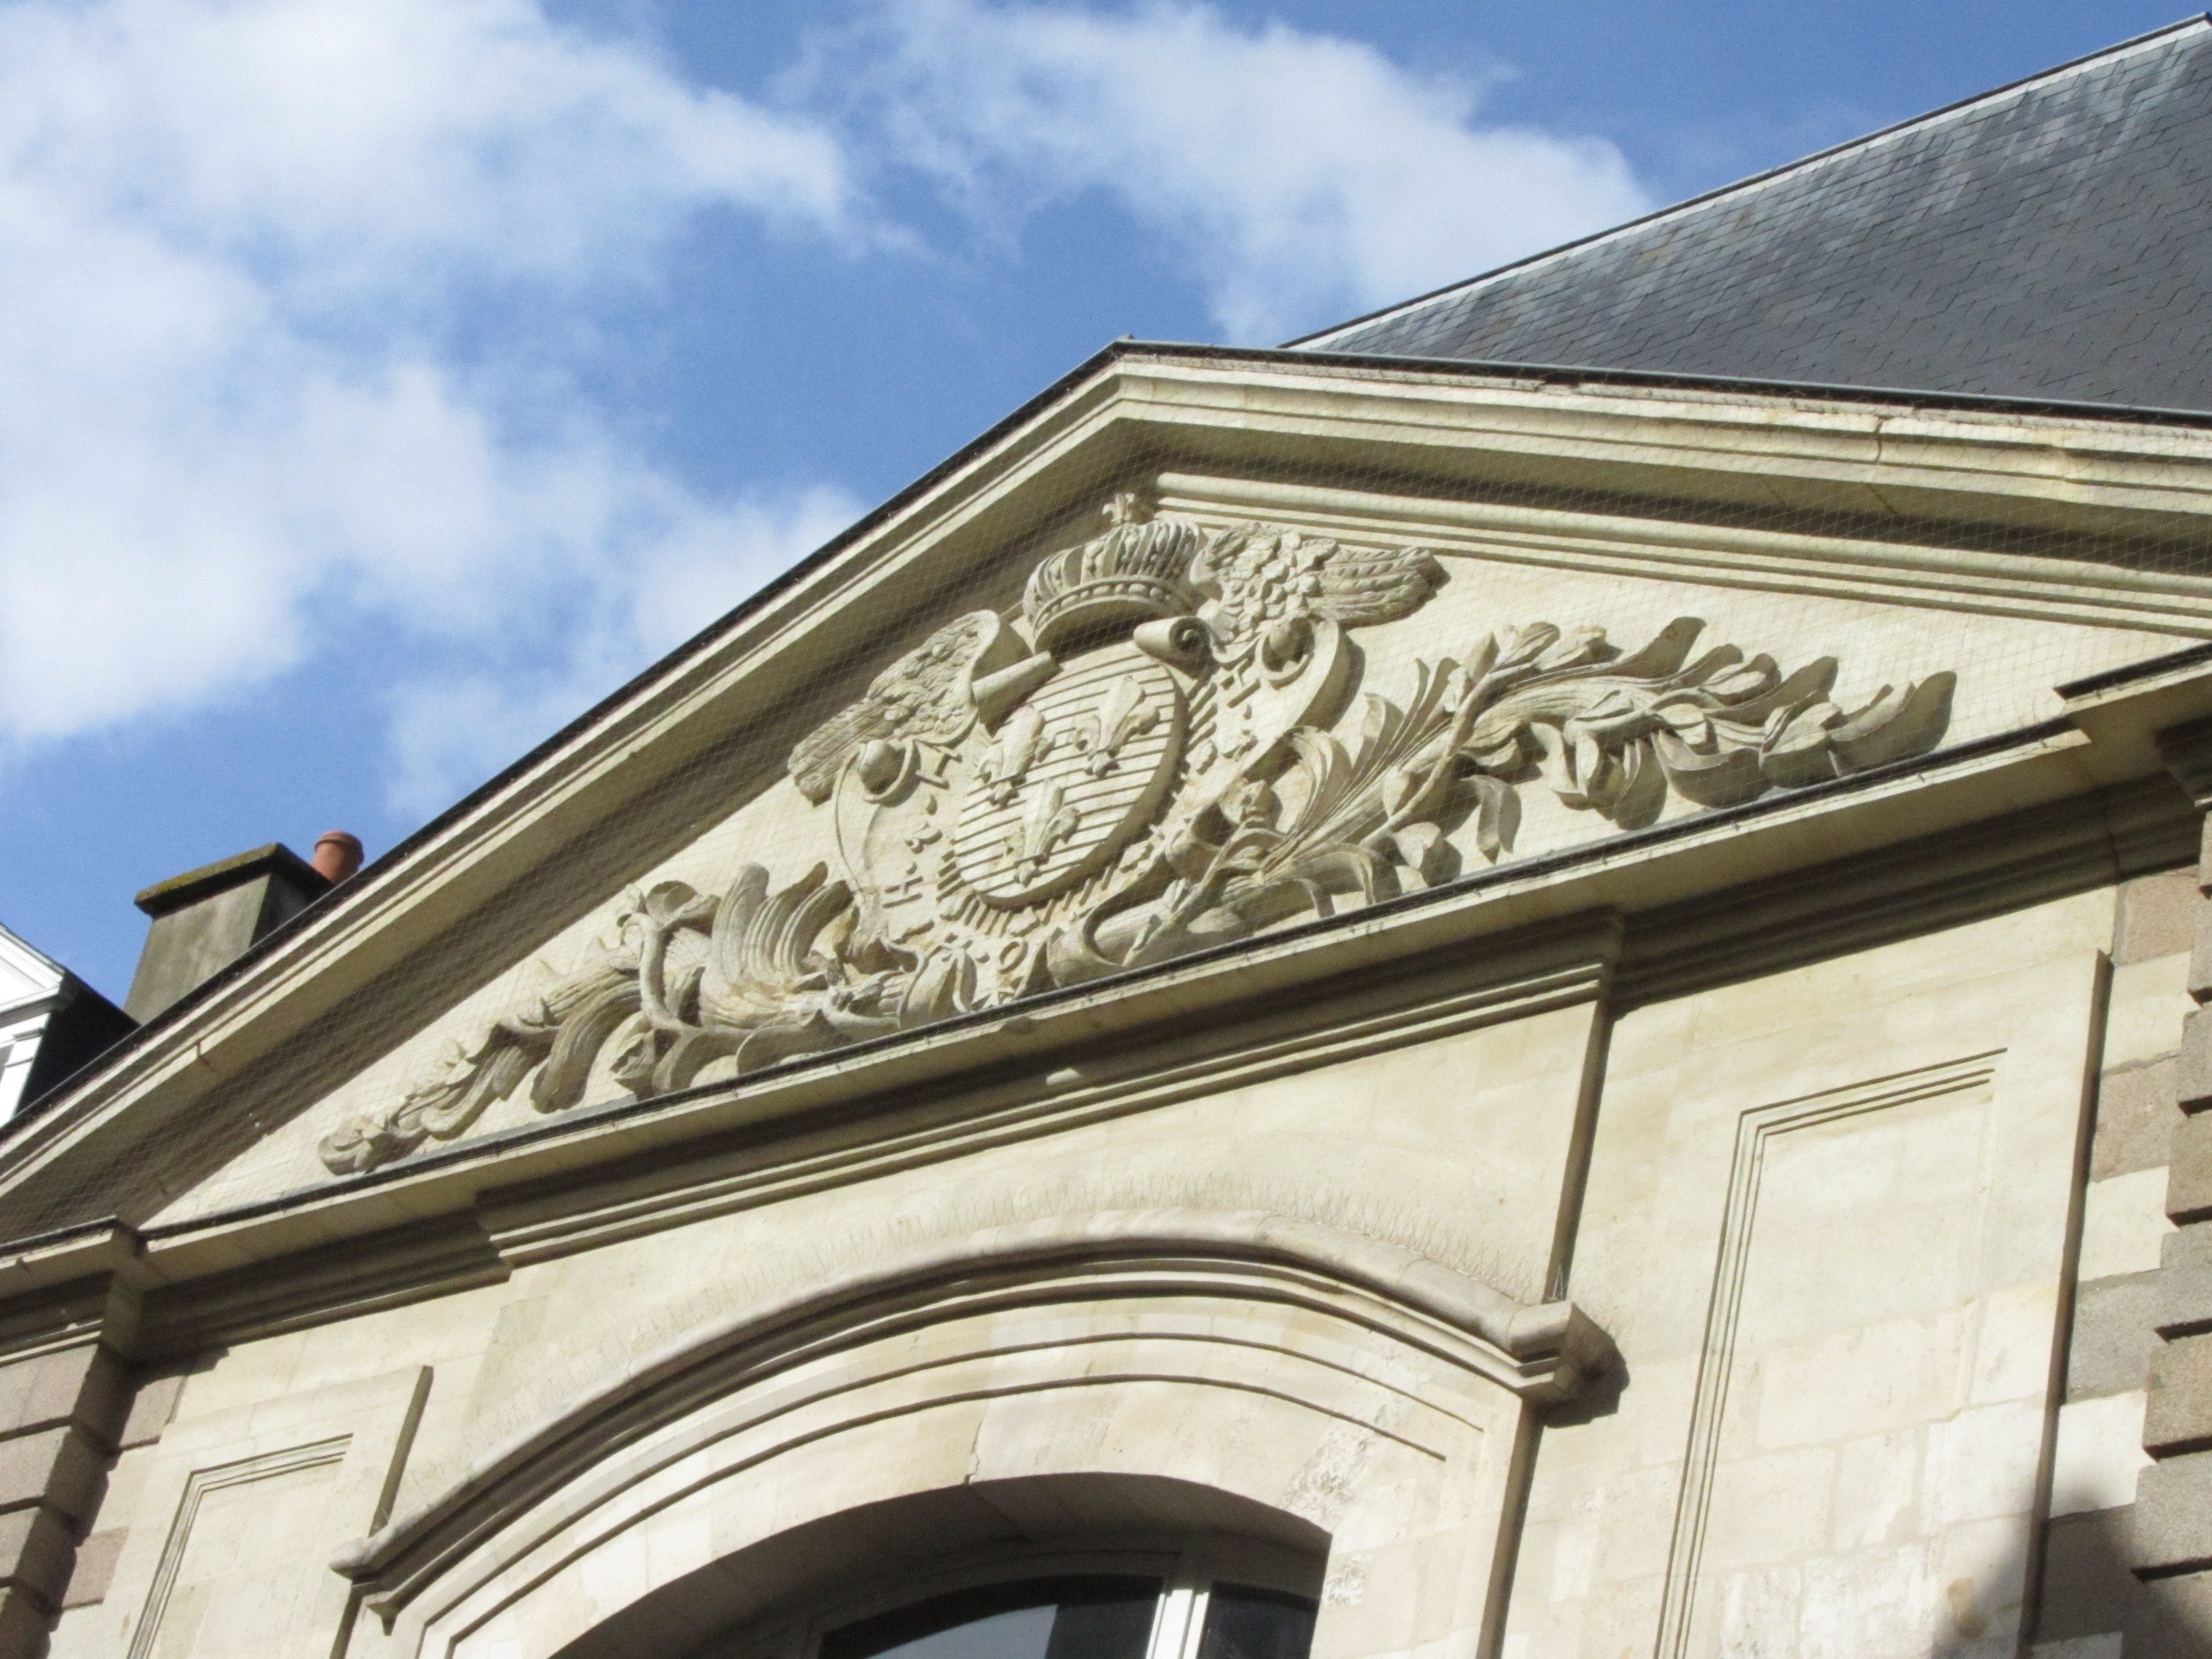 Bas relief avec les armoiries de la France (d'azur aux trois fleurs de lys d'or) sur le fronton d'un bâtiment.